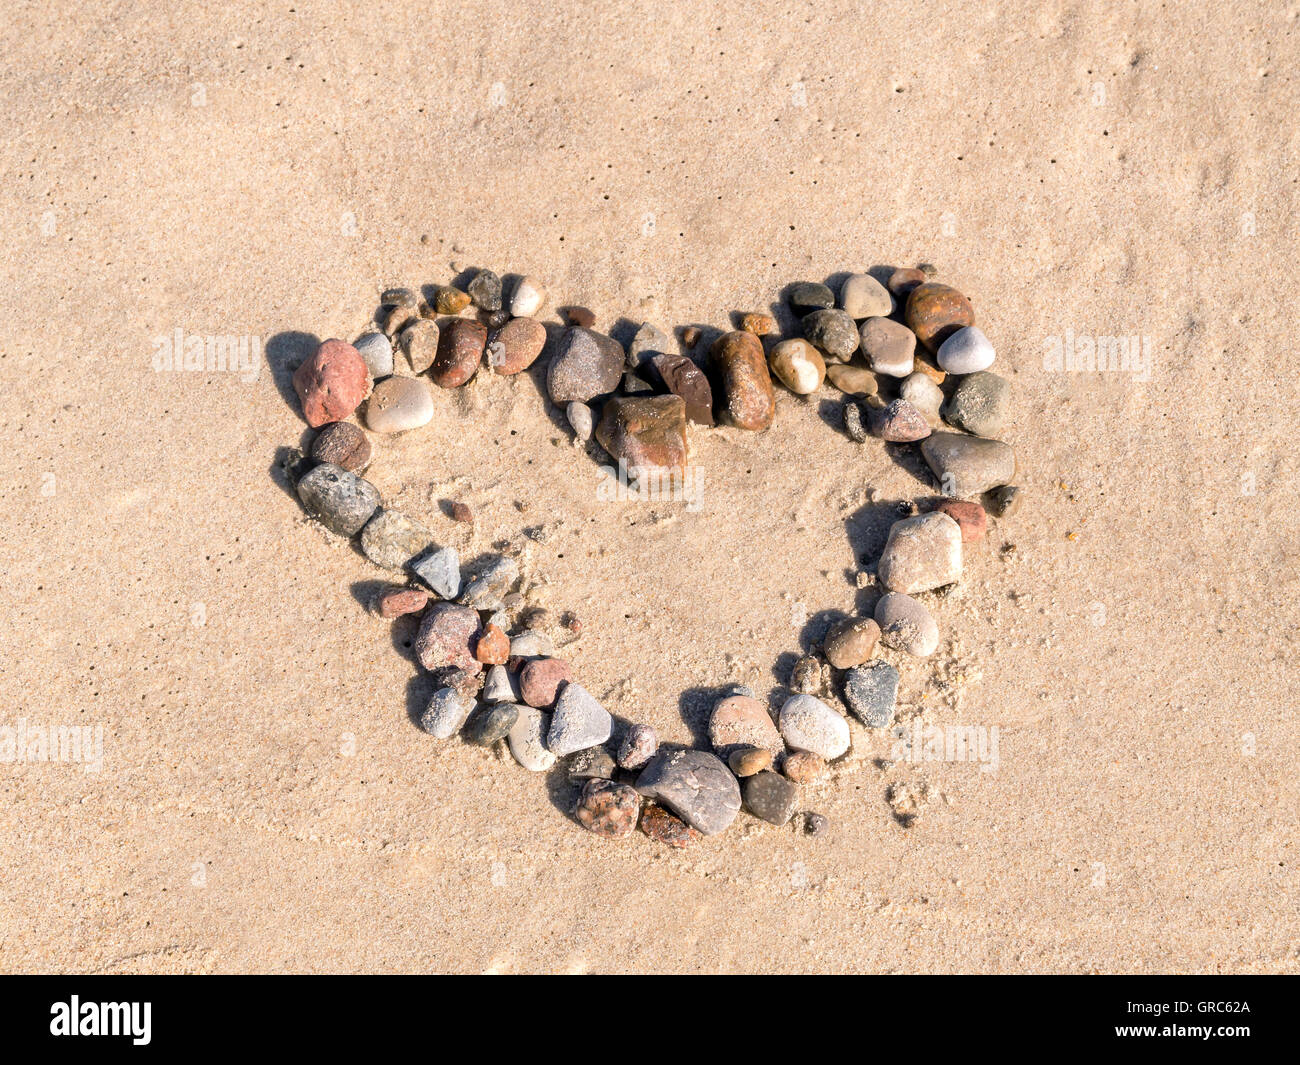 Signe du cœur organisé à partir de galets sur le sable de la plage Banque D'Images